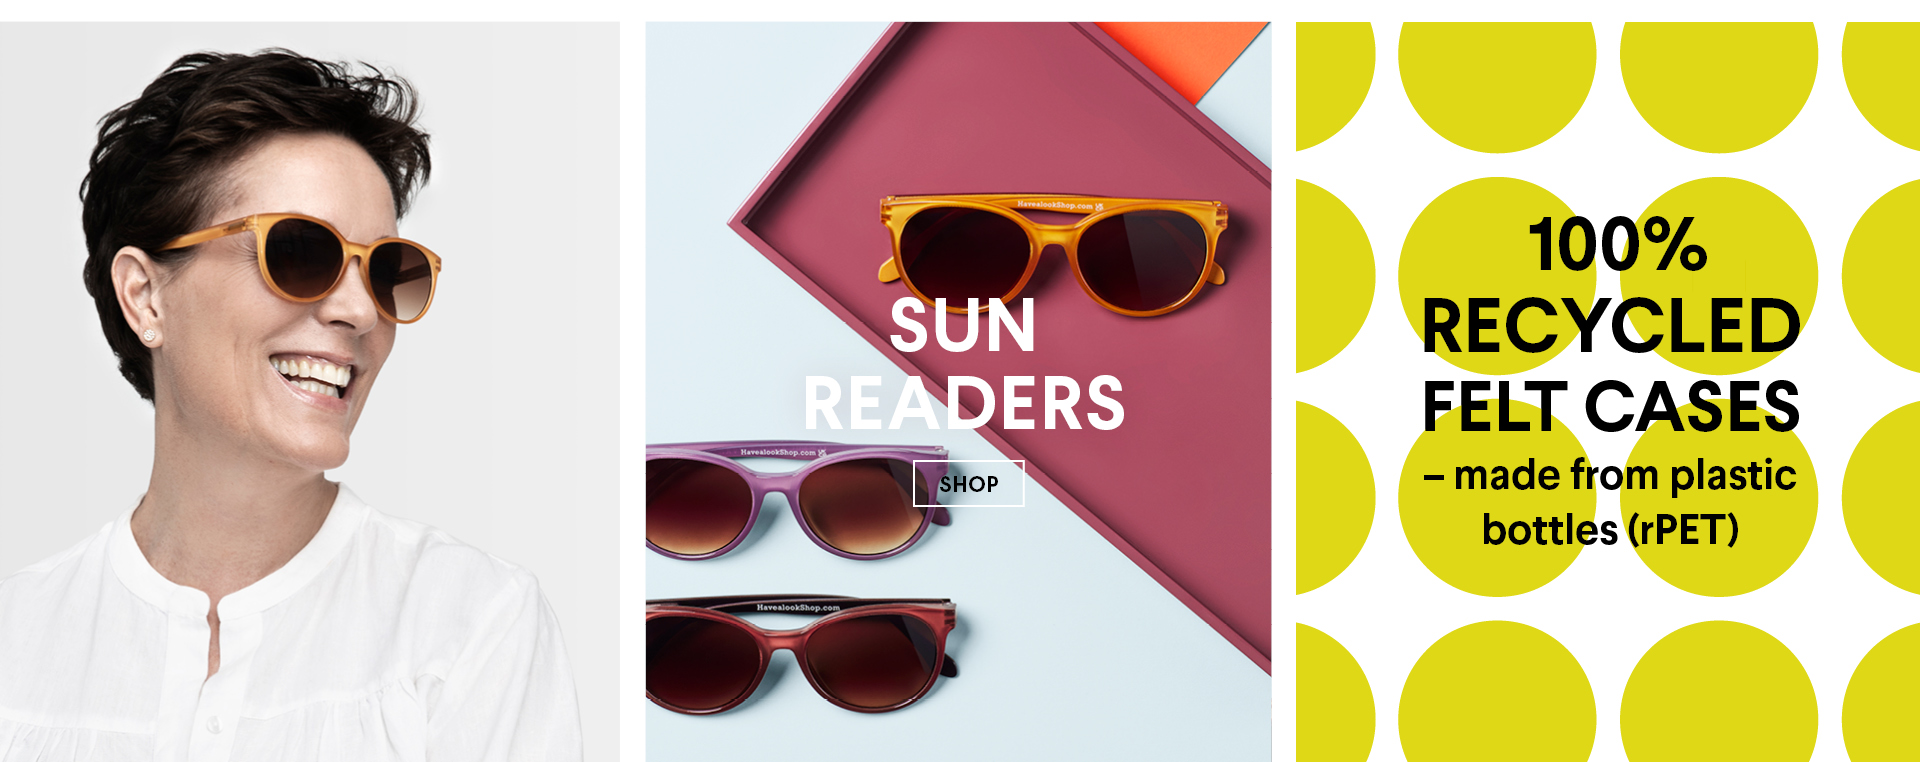 sun readers